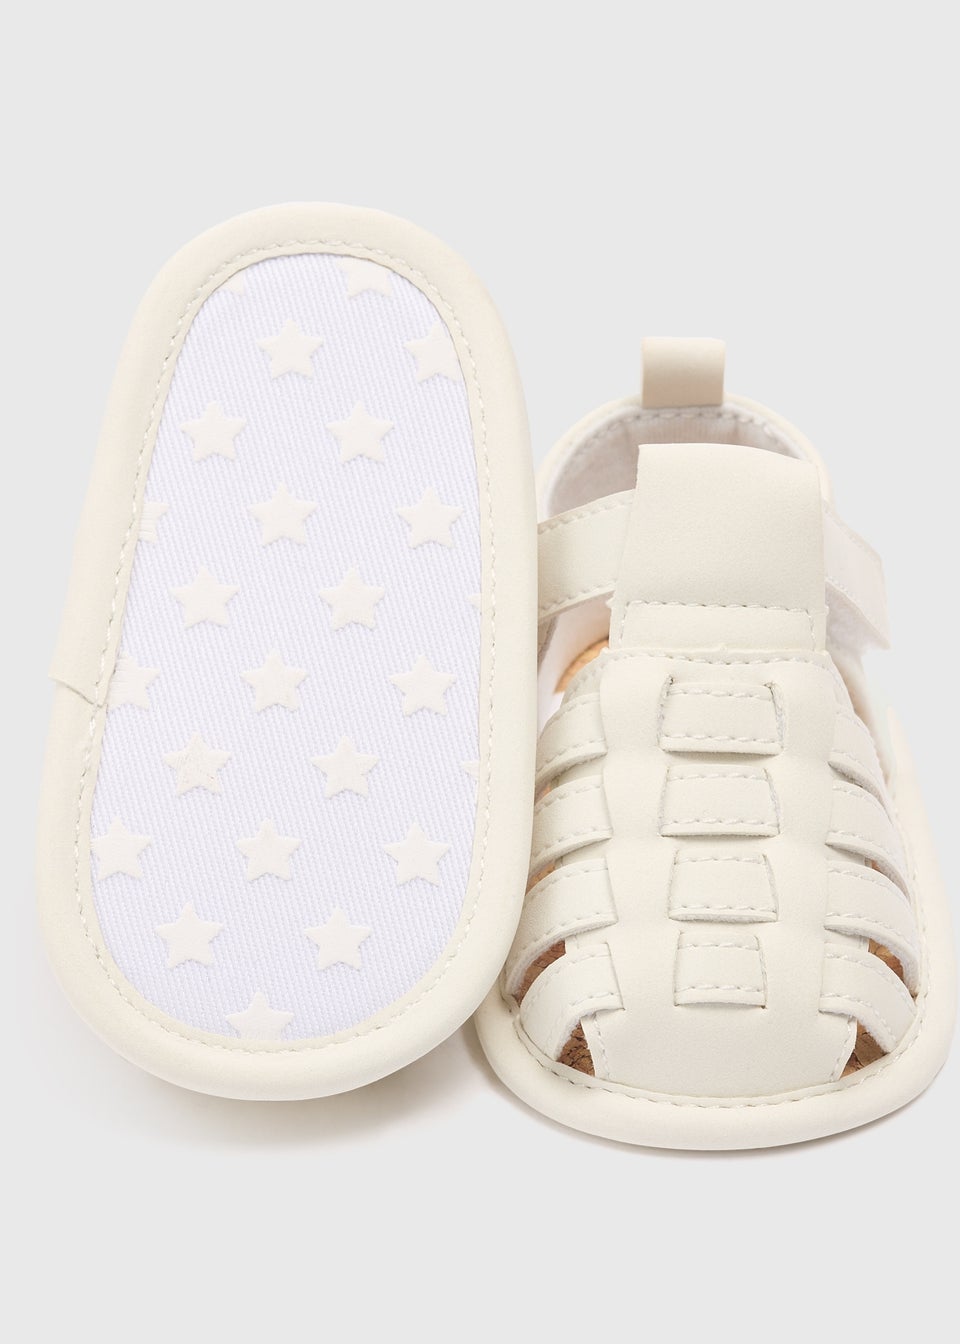 Baby White Caged Sandals (newborn-18mths)